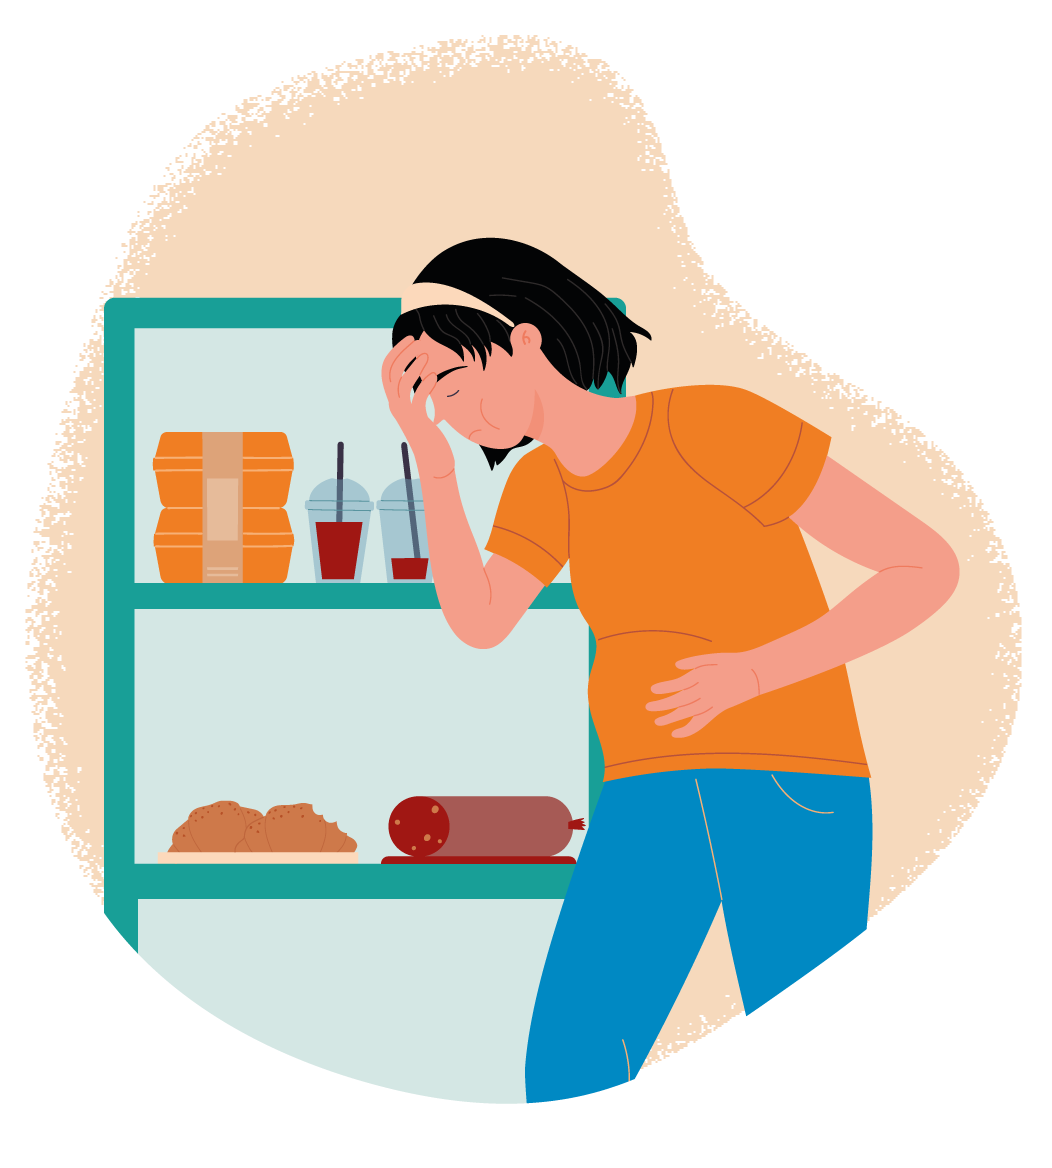 Las personas que presentan un trastorno por atracón tienden a sentir vergüenza y culpa luego de ingerir comida en grandes cantidades. Foto: Shutterstock